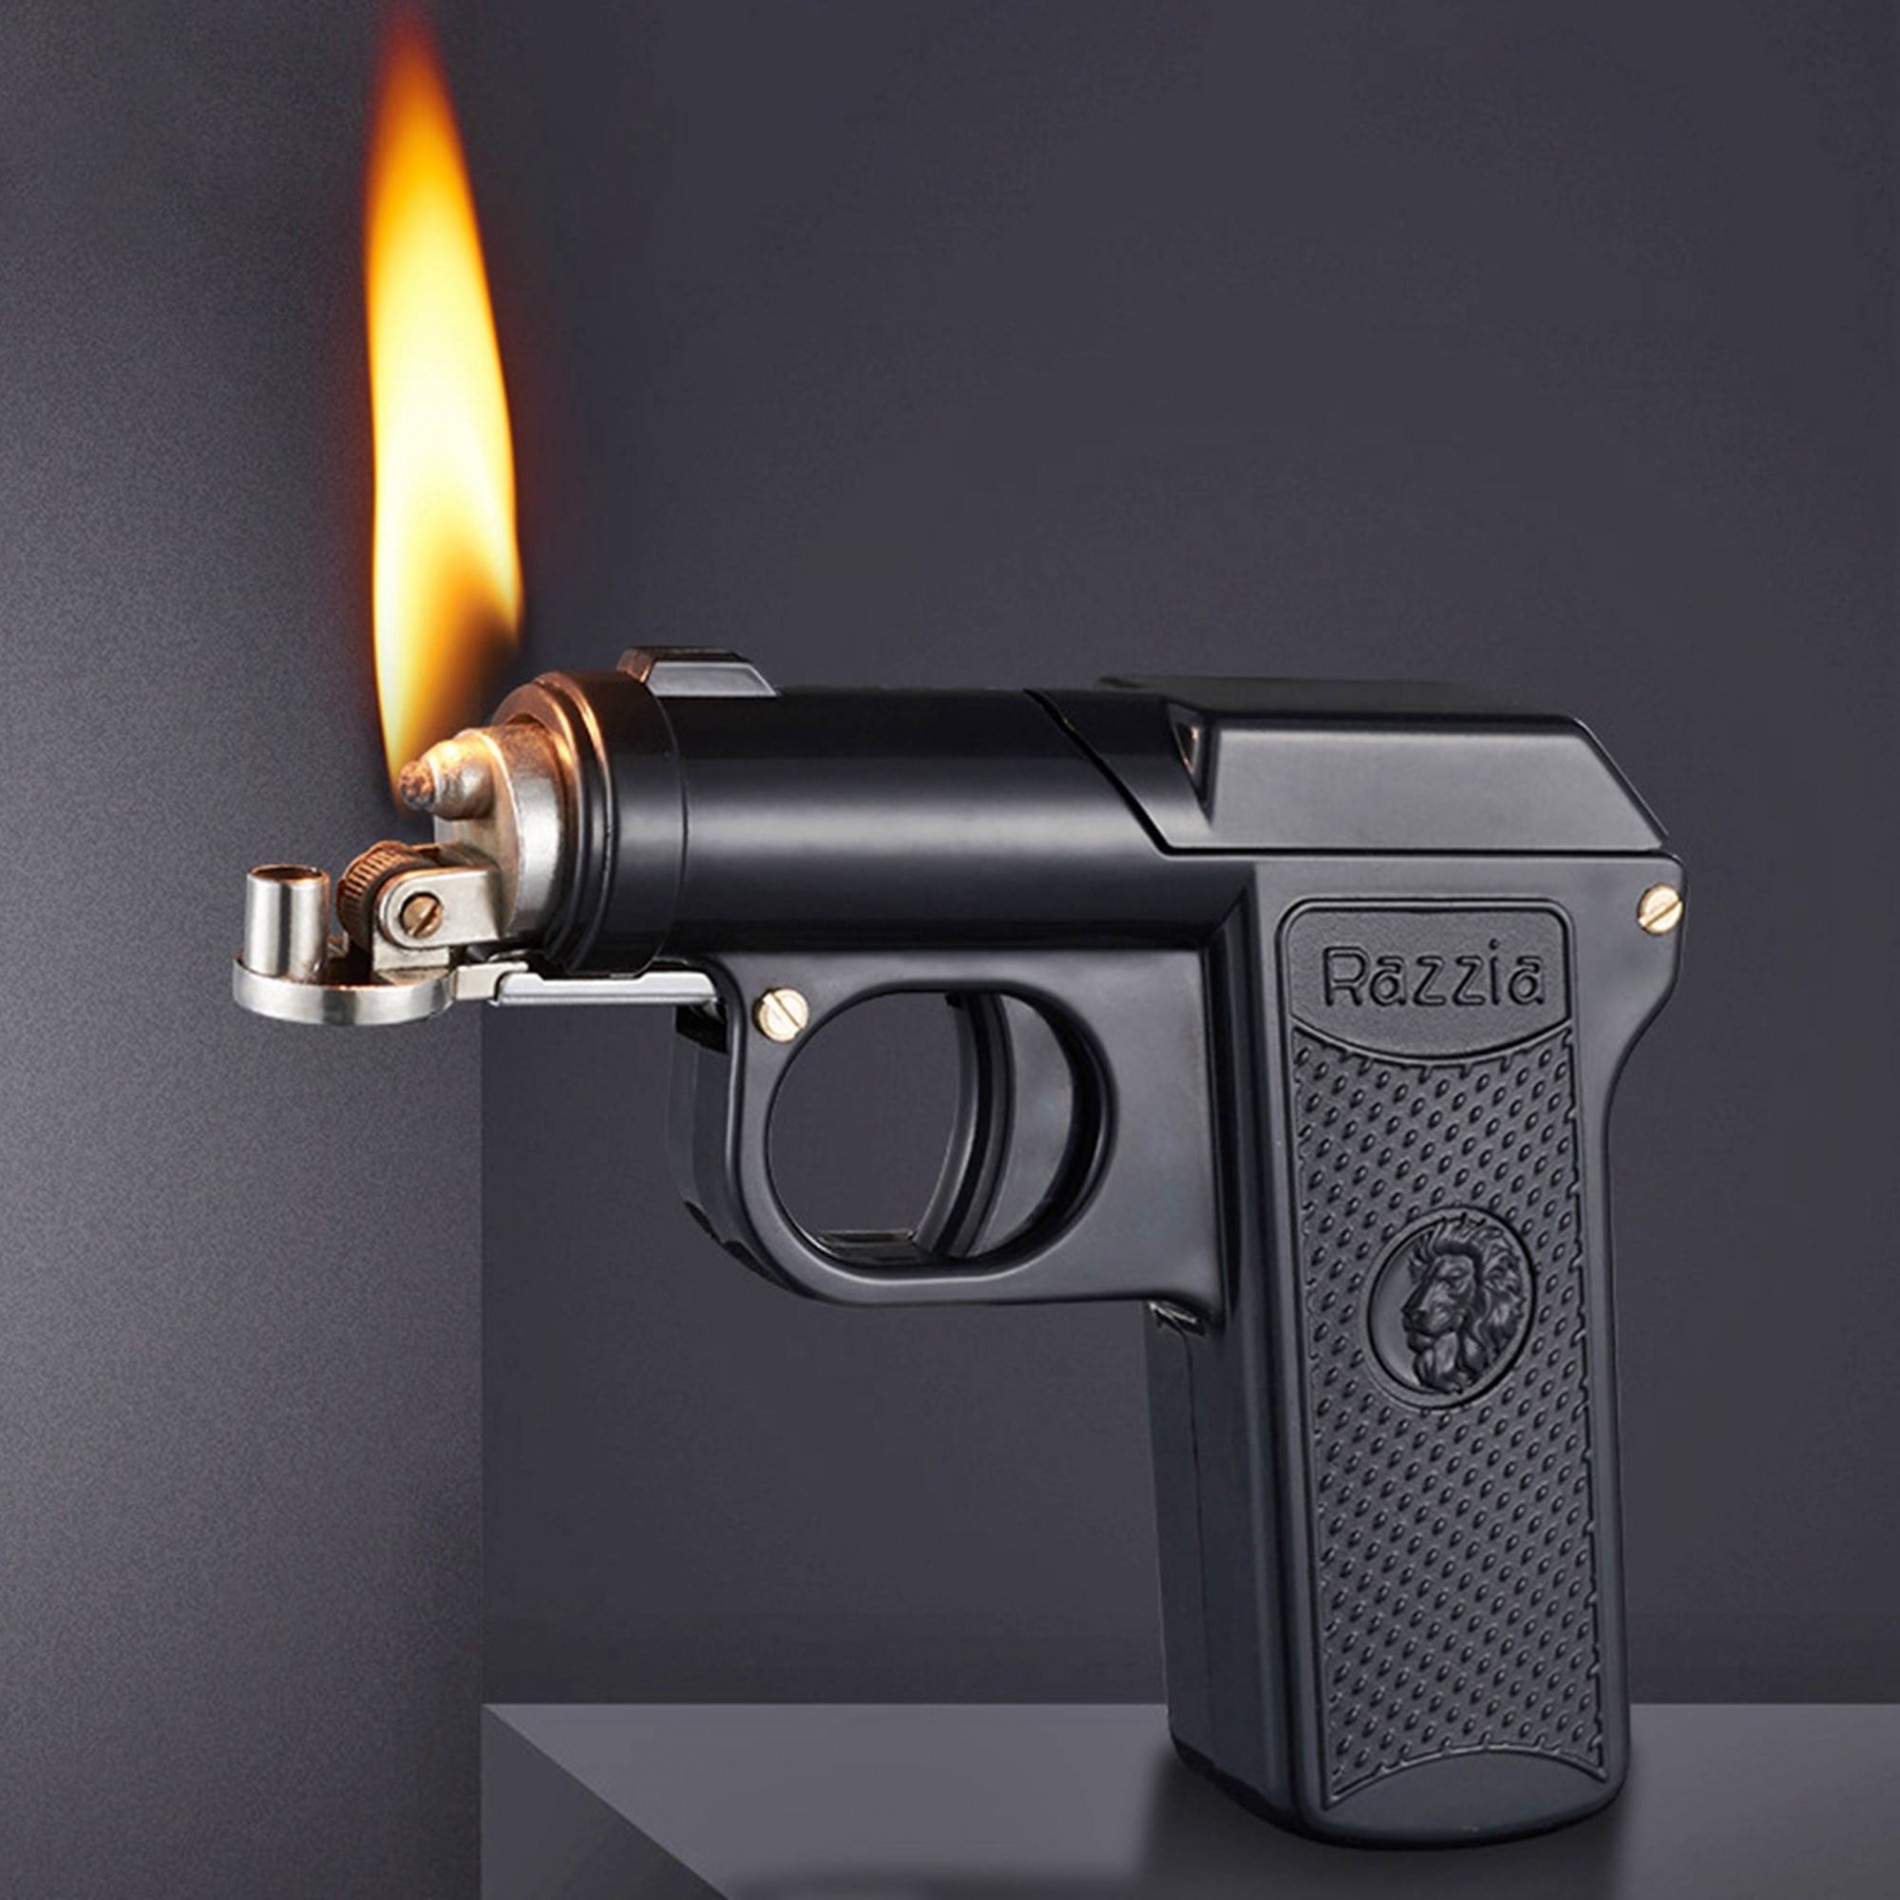 Hột quẹt bật lửa xăng đá hộp thuốc RAZZIA 2in1 hình súng để được 6 điếu thuốc - xài xăng